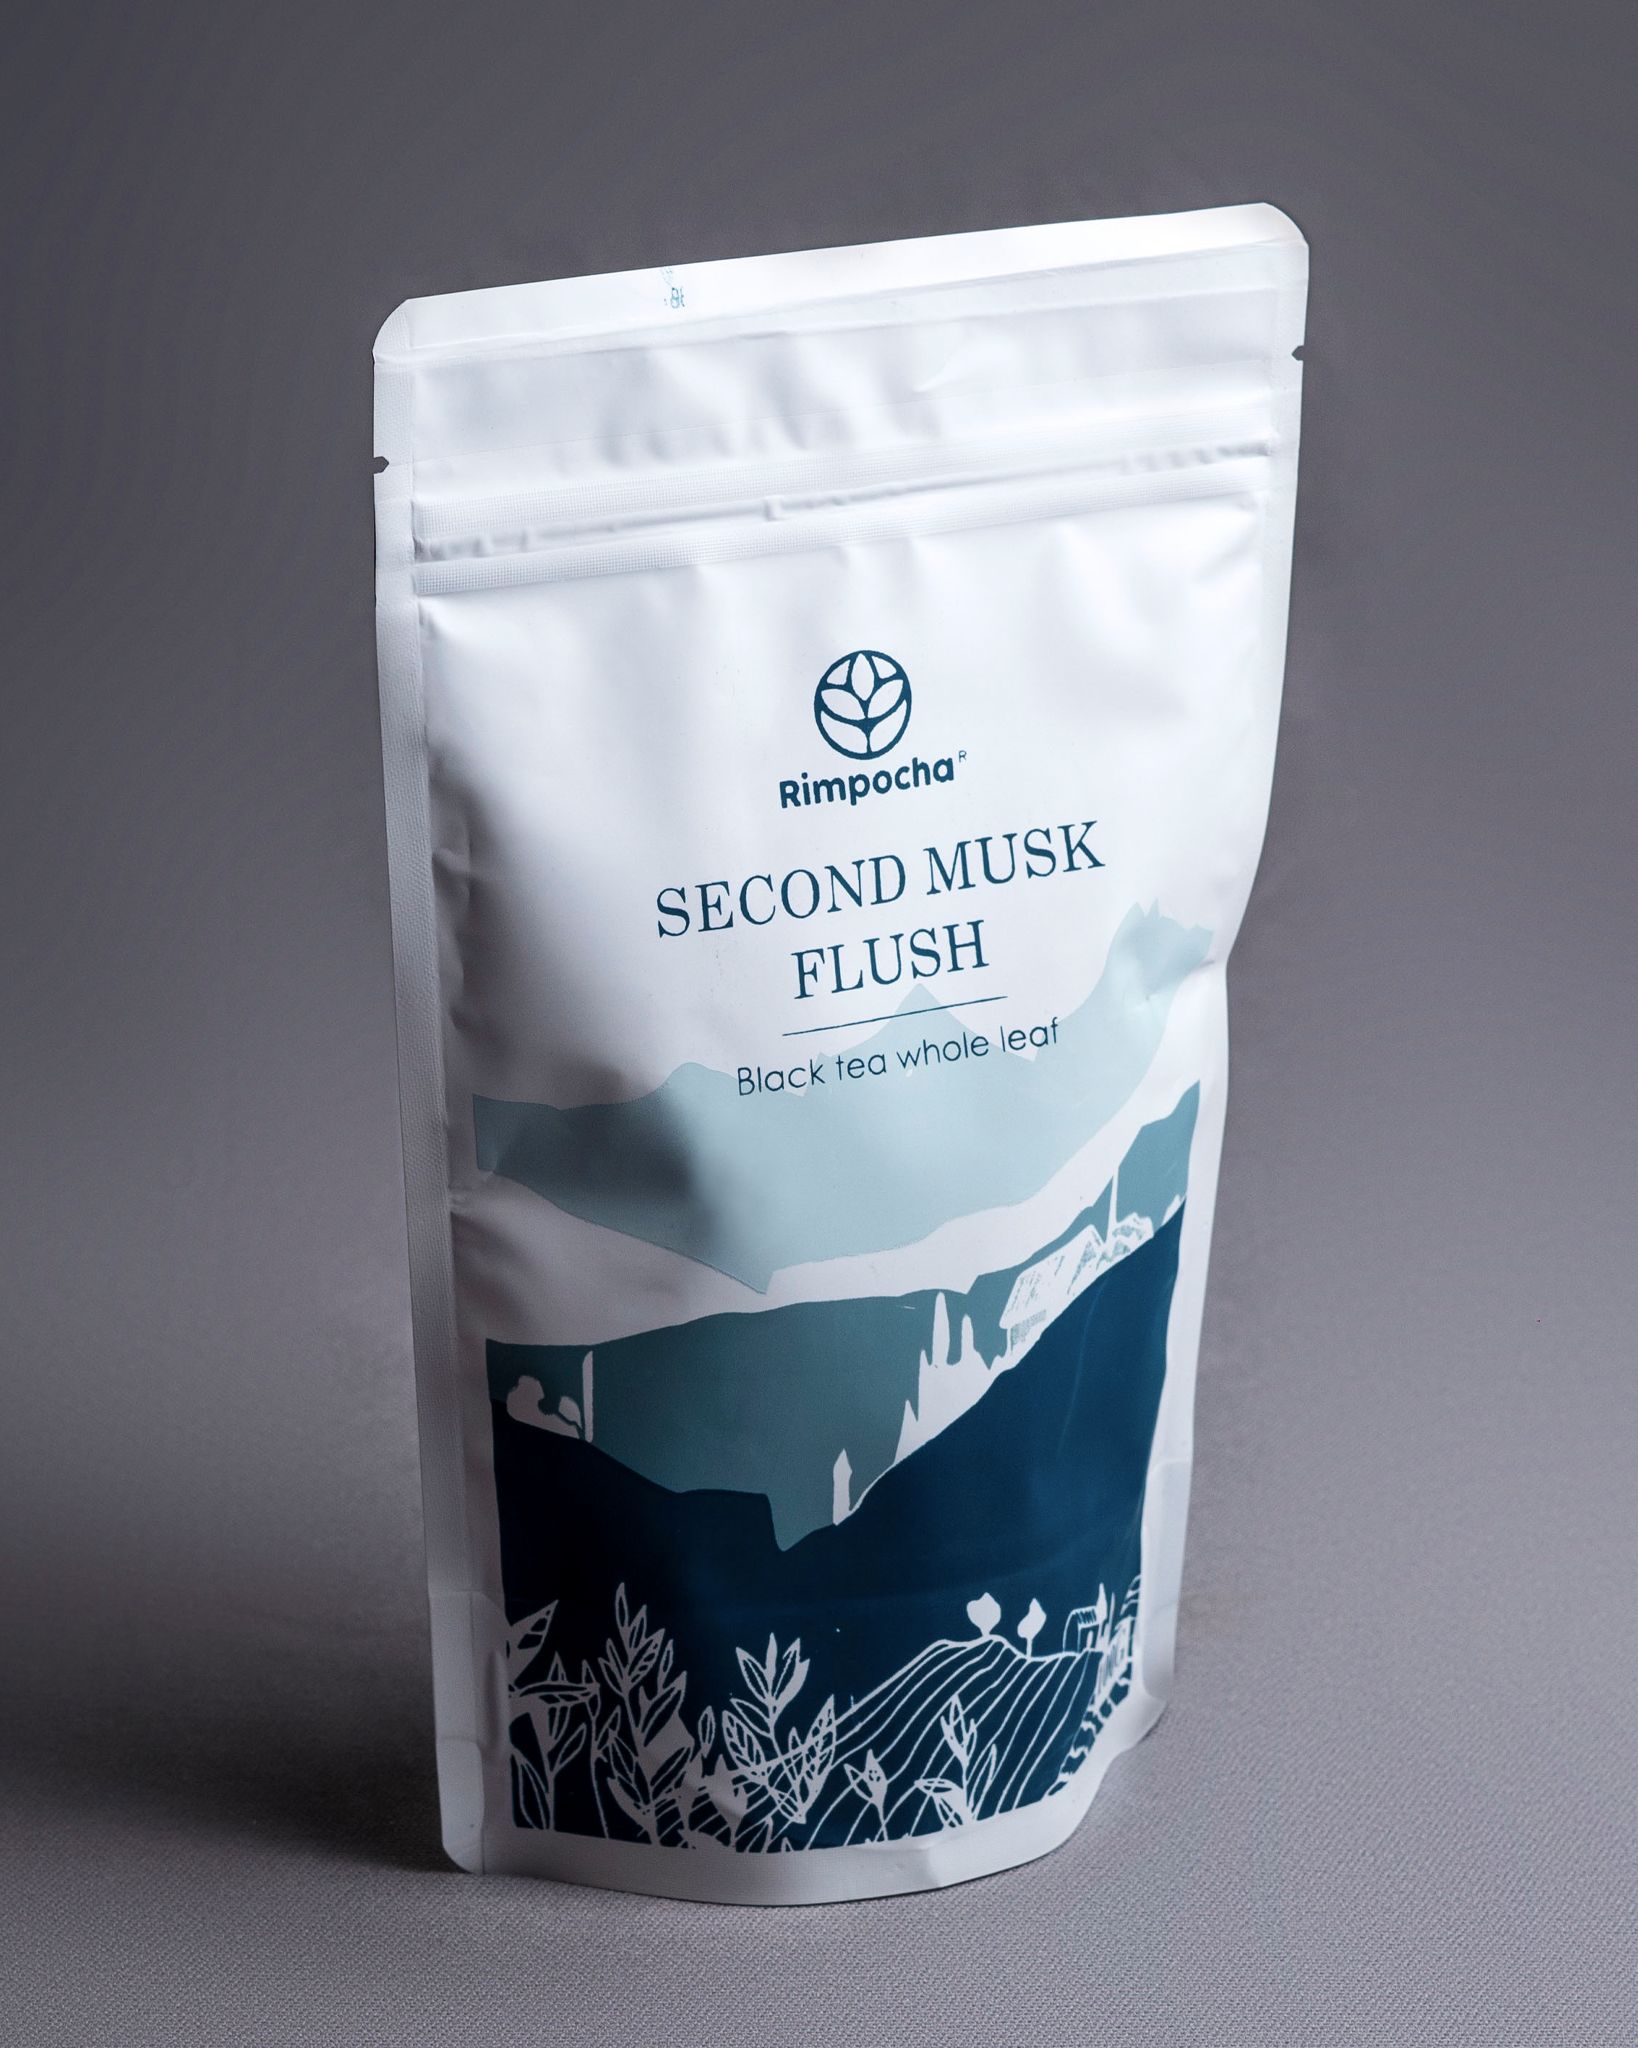 Second Musk Flush - A high summer Tea